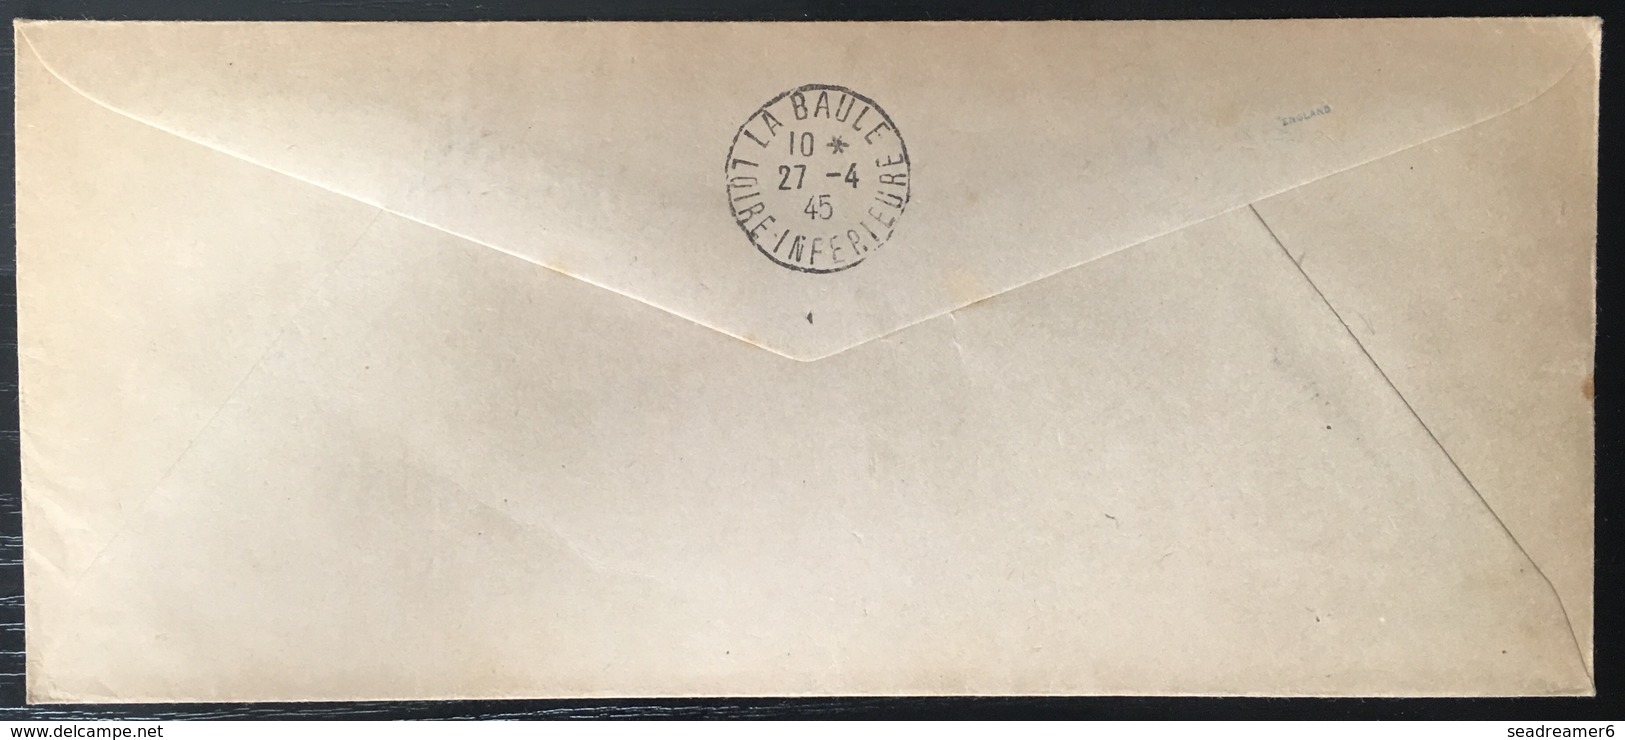 France ILOT DE SAINT NAZAIRE / POCHE DE L'ATLANTIQUE - 1945 - ENVELOPPE RECOMMANDEE De St Joachim - War Stamps